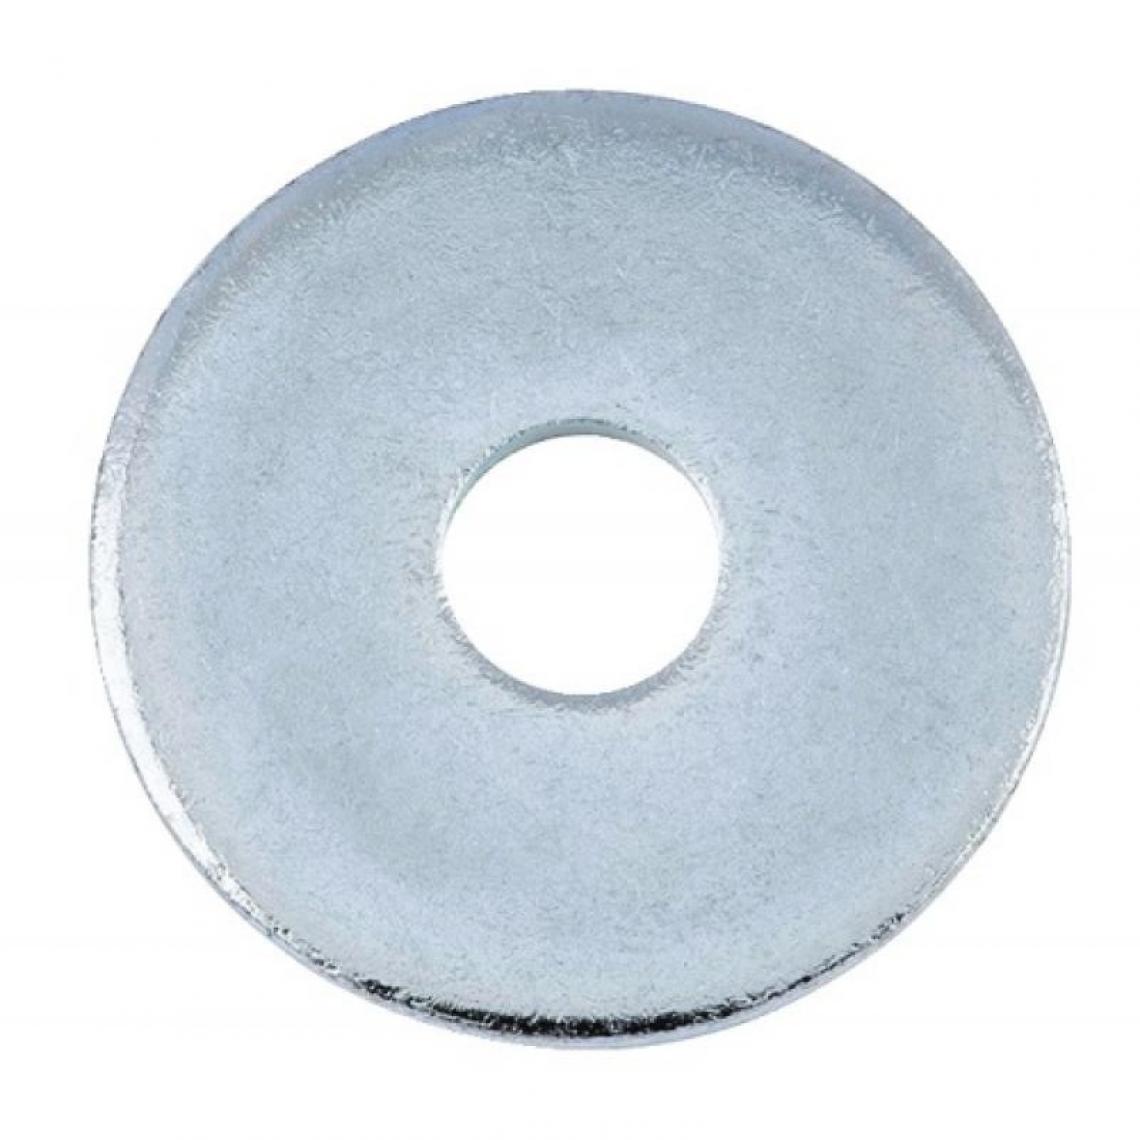 Gfd - Rondelles de charpentier acier zingué blanc diamètre 10, dxDxe : 11x36x3mm boîte de 100 pièces - Charnière de fenetre